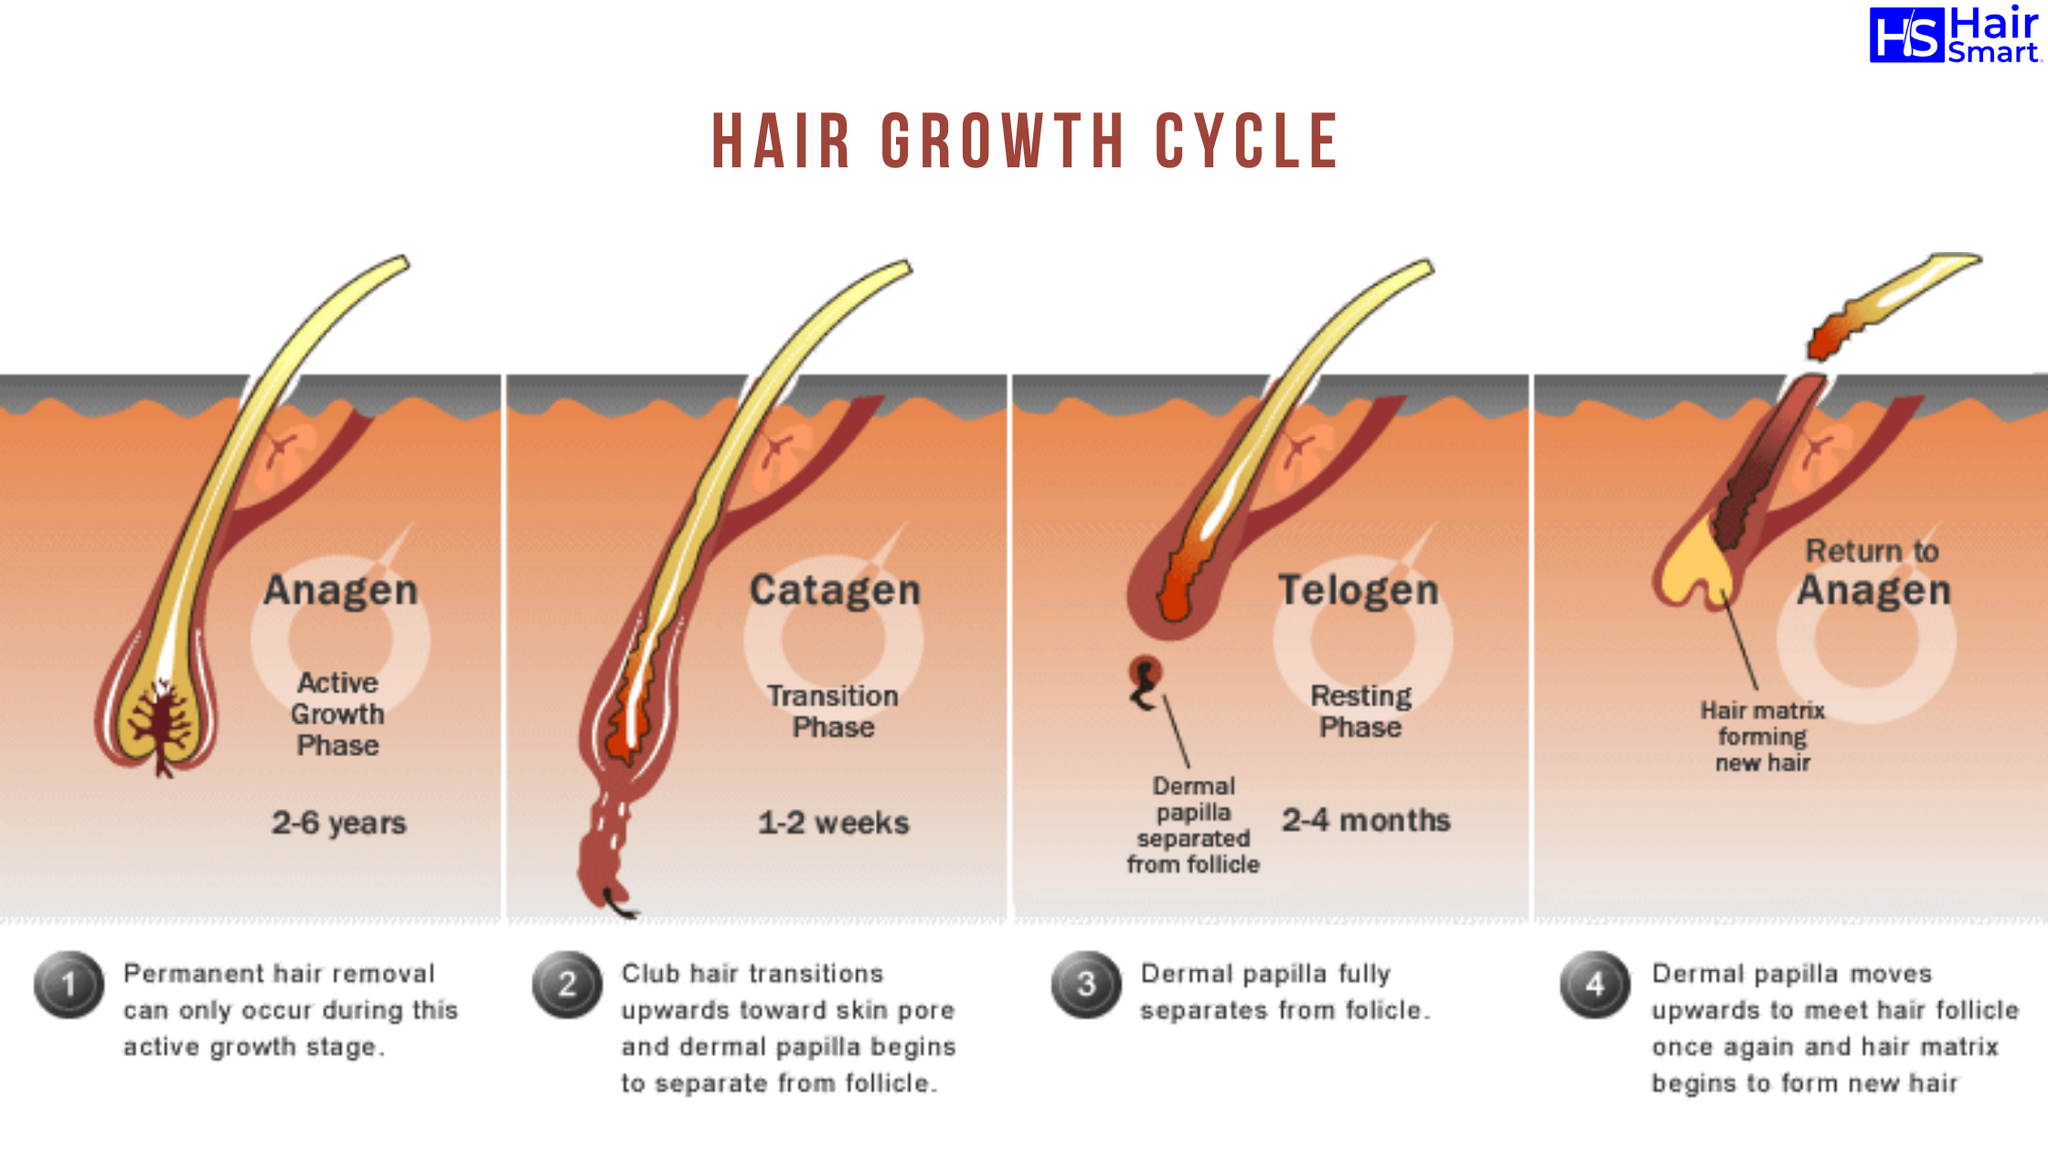 Сильный рост волос. Ресницы анаген катаген. Строение волоса и фазы роста. Анаген катаген телоген волос. Катаген фаза роста волос.